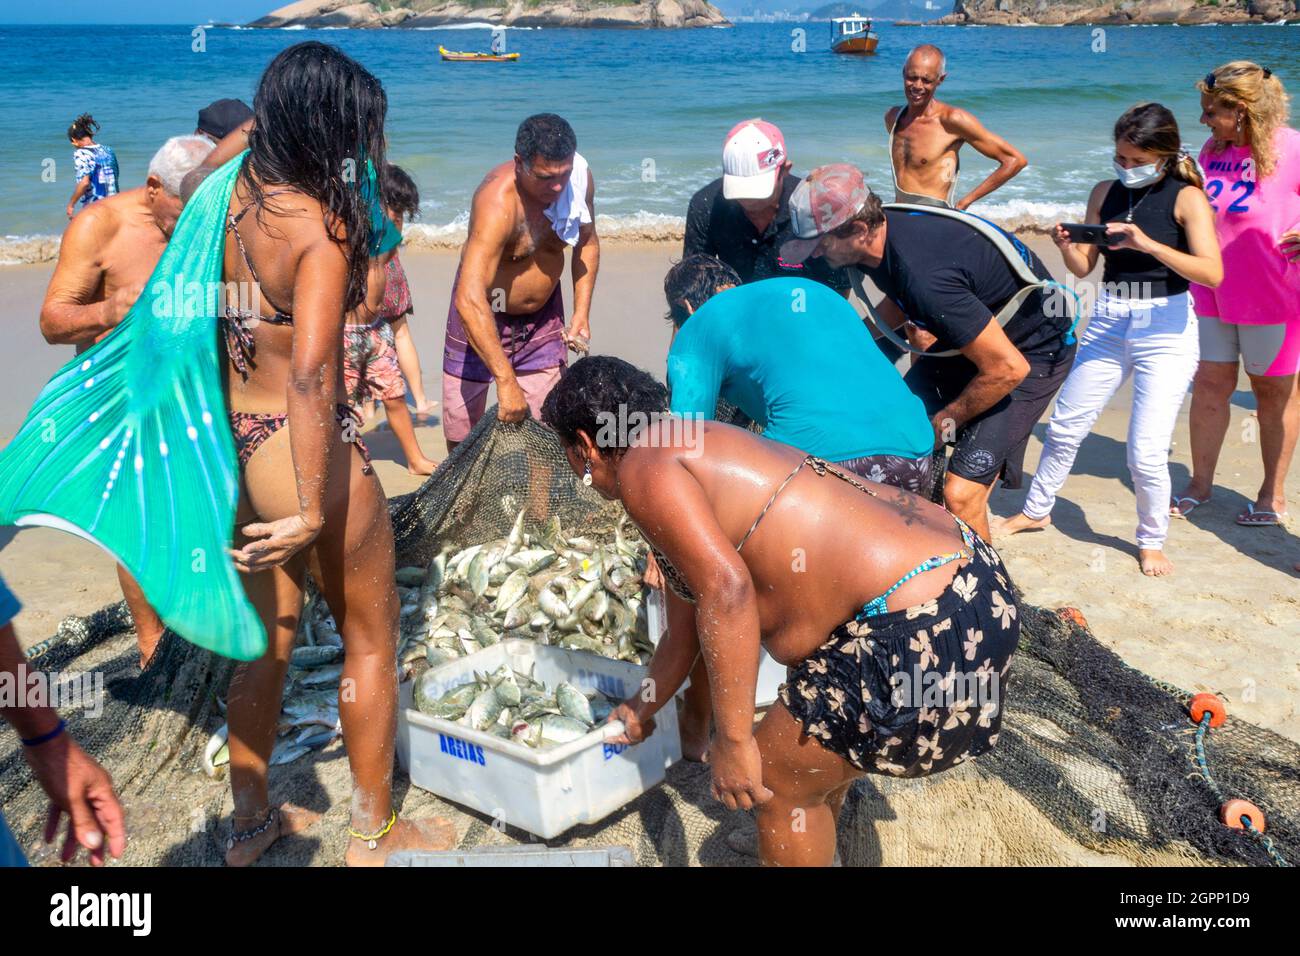 Gemeinschaftsveranstaltung für handwerkliche Fischerei, Piritininga Beach, Rio de Janeiro, Brasilien Stockfoto